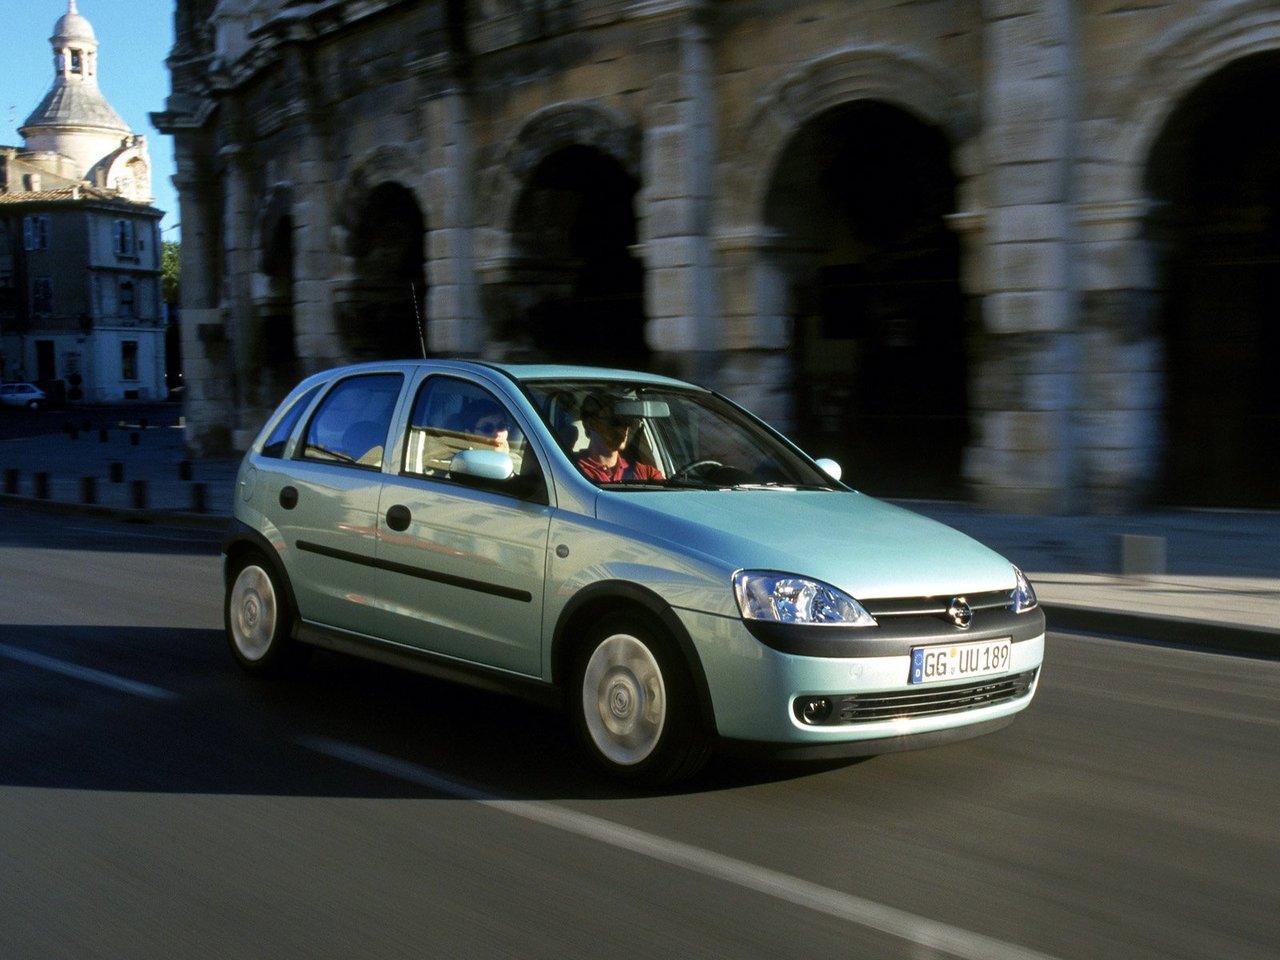 Снижаем расход Opel Corsa на топливо, устанавливаем ГБО